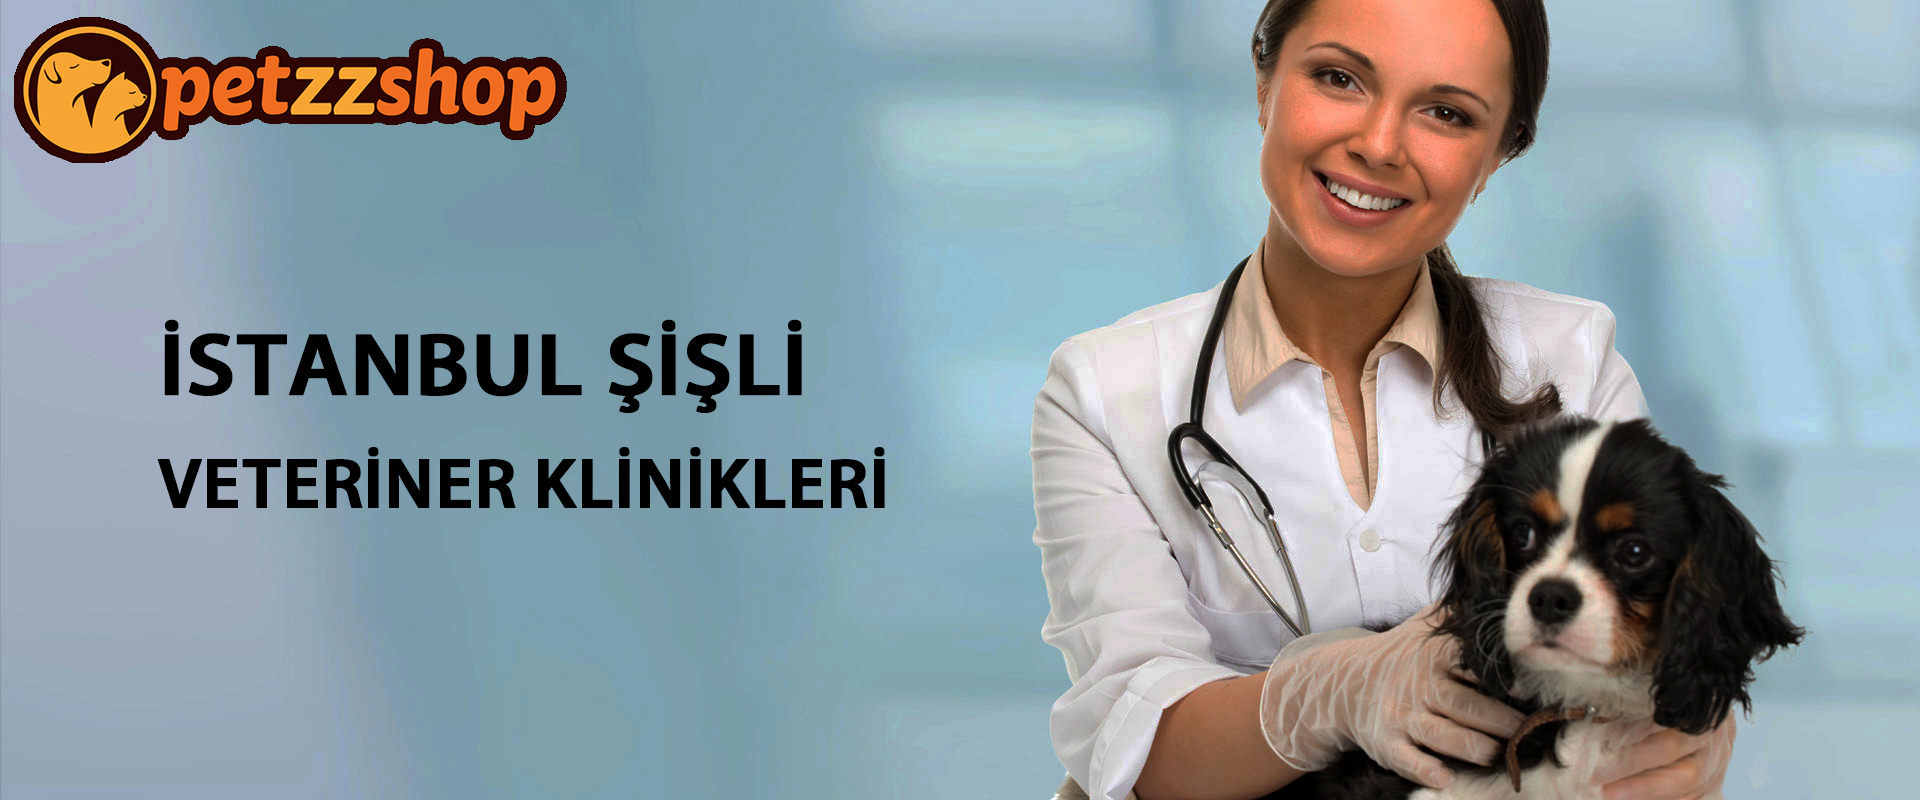 İstanbul Şişli Veteriner Klinikleri